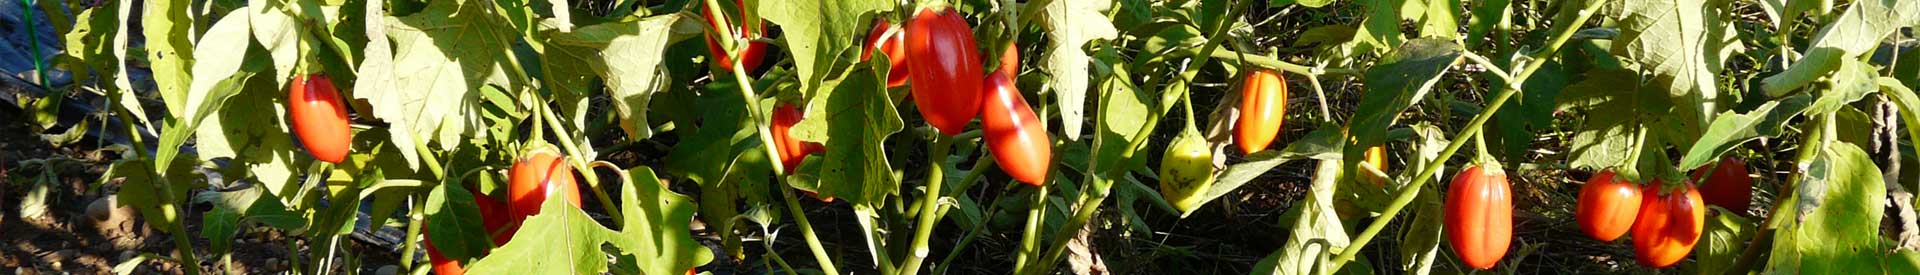 aubergine-red_egg_plant.jpg